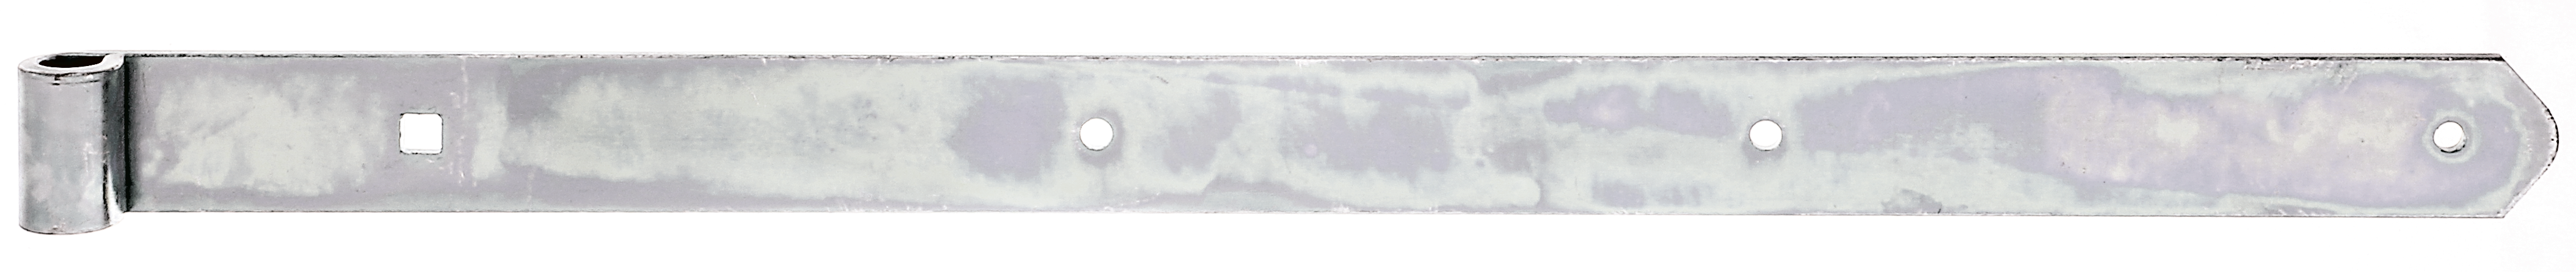 Alberts® Ladenband, gerade, Abschluss abgerundet, galvanisch verzinkt dickschichtpassiviert, LxB 600x40 mm, Rolle ⌀13 mm 